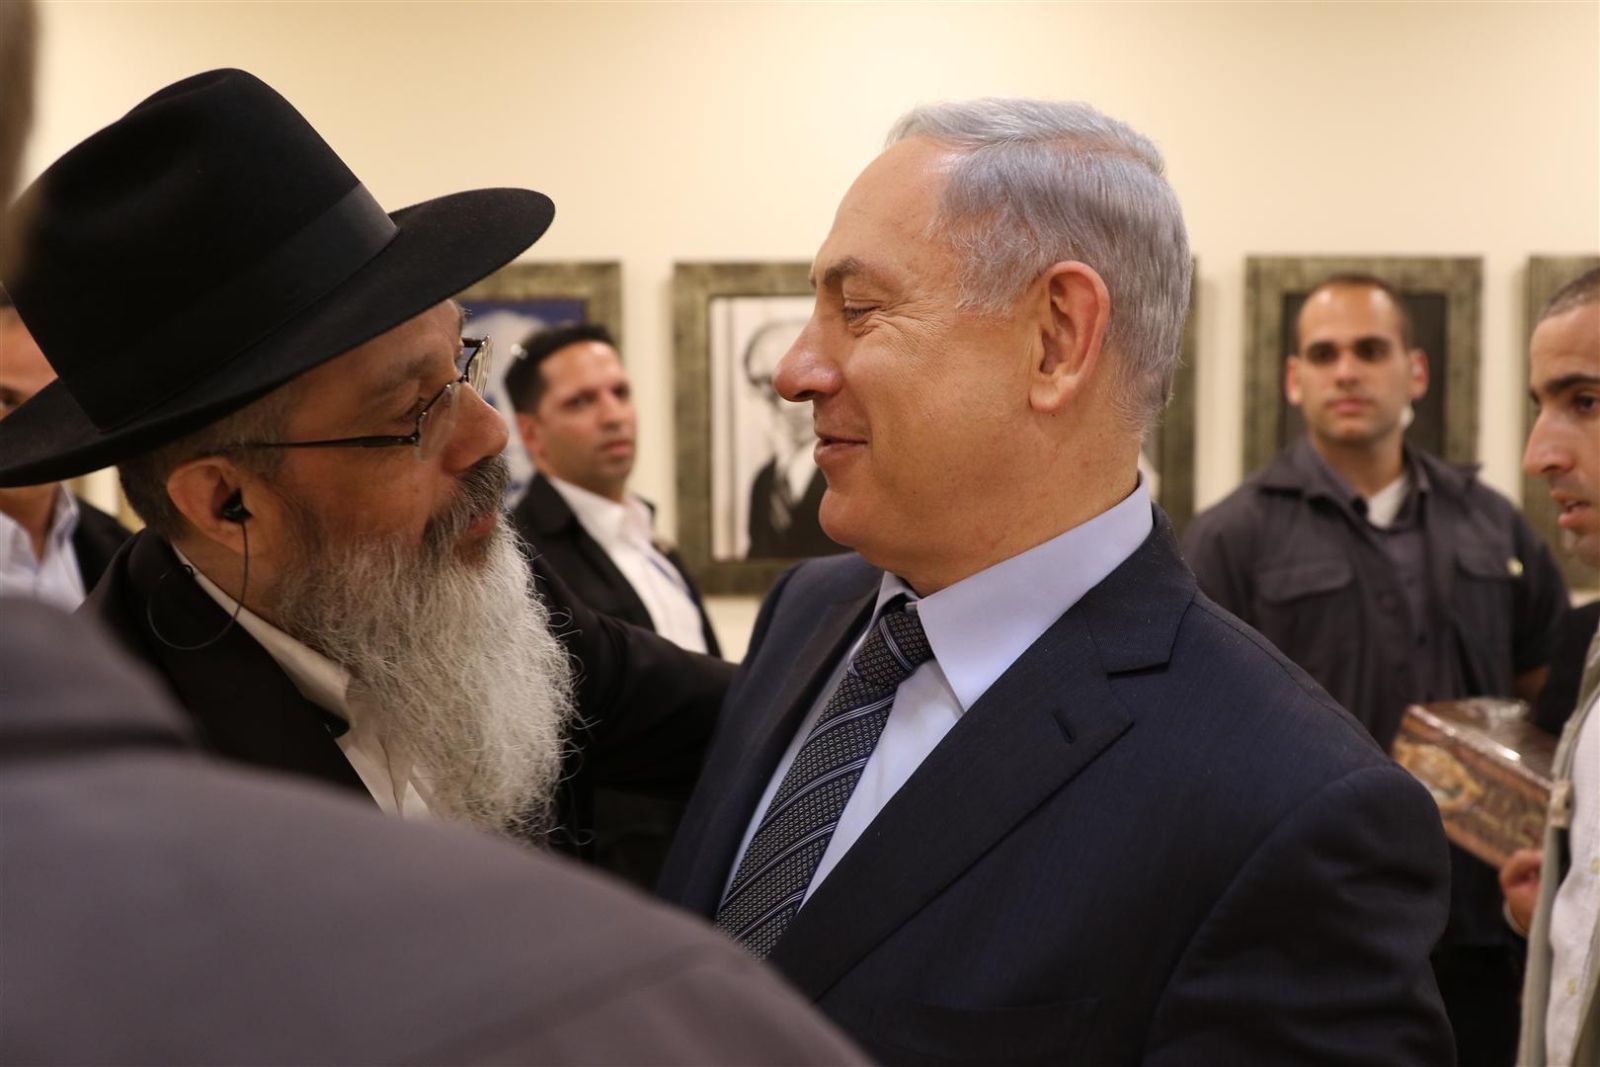 הרב נחשון נפגש עם ראש הממשלה